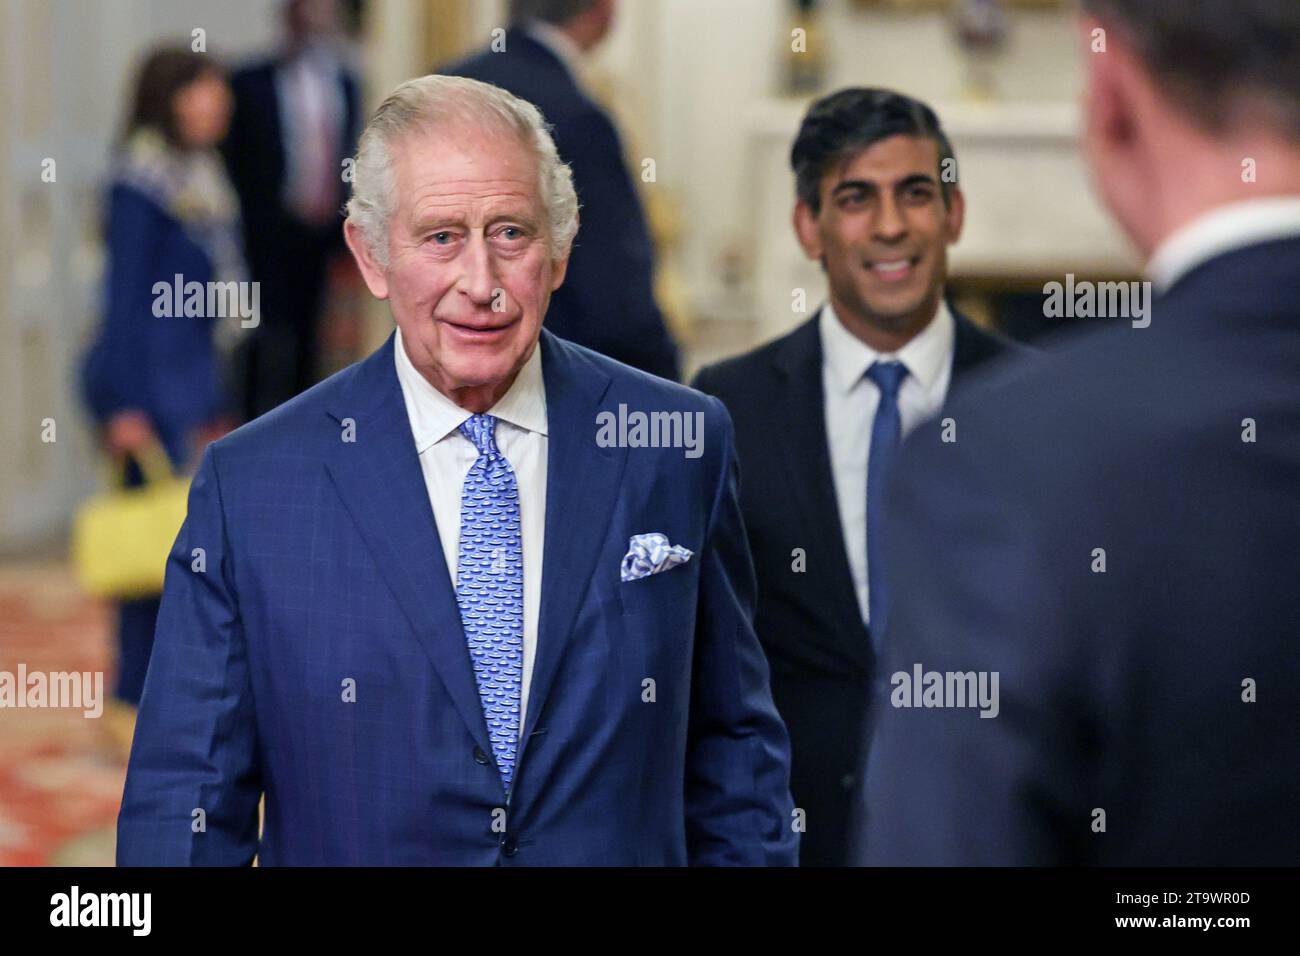 König Karl III. Mit Premierminister Rishi Sunak (Mitte) während eines Empfangs im Londoner Buckingham Palace anlässlich des Global Investment Summit 2023. Bilddatum: Montag, 27. November 2023. Stockfoto